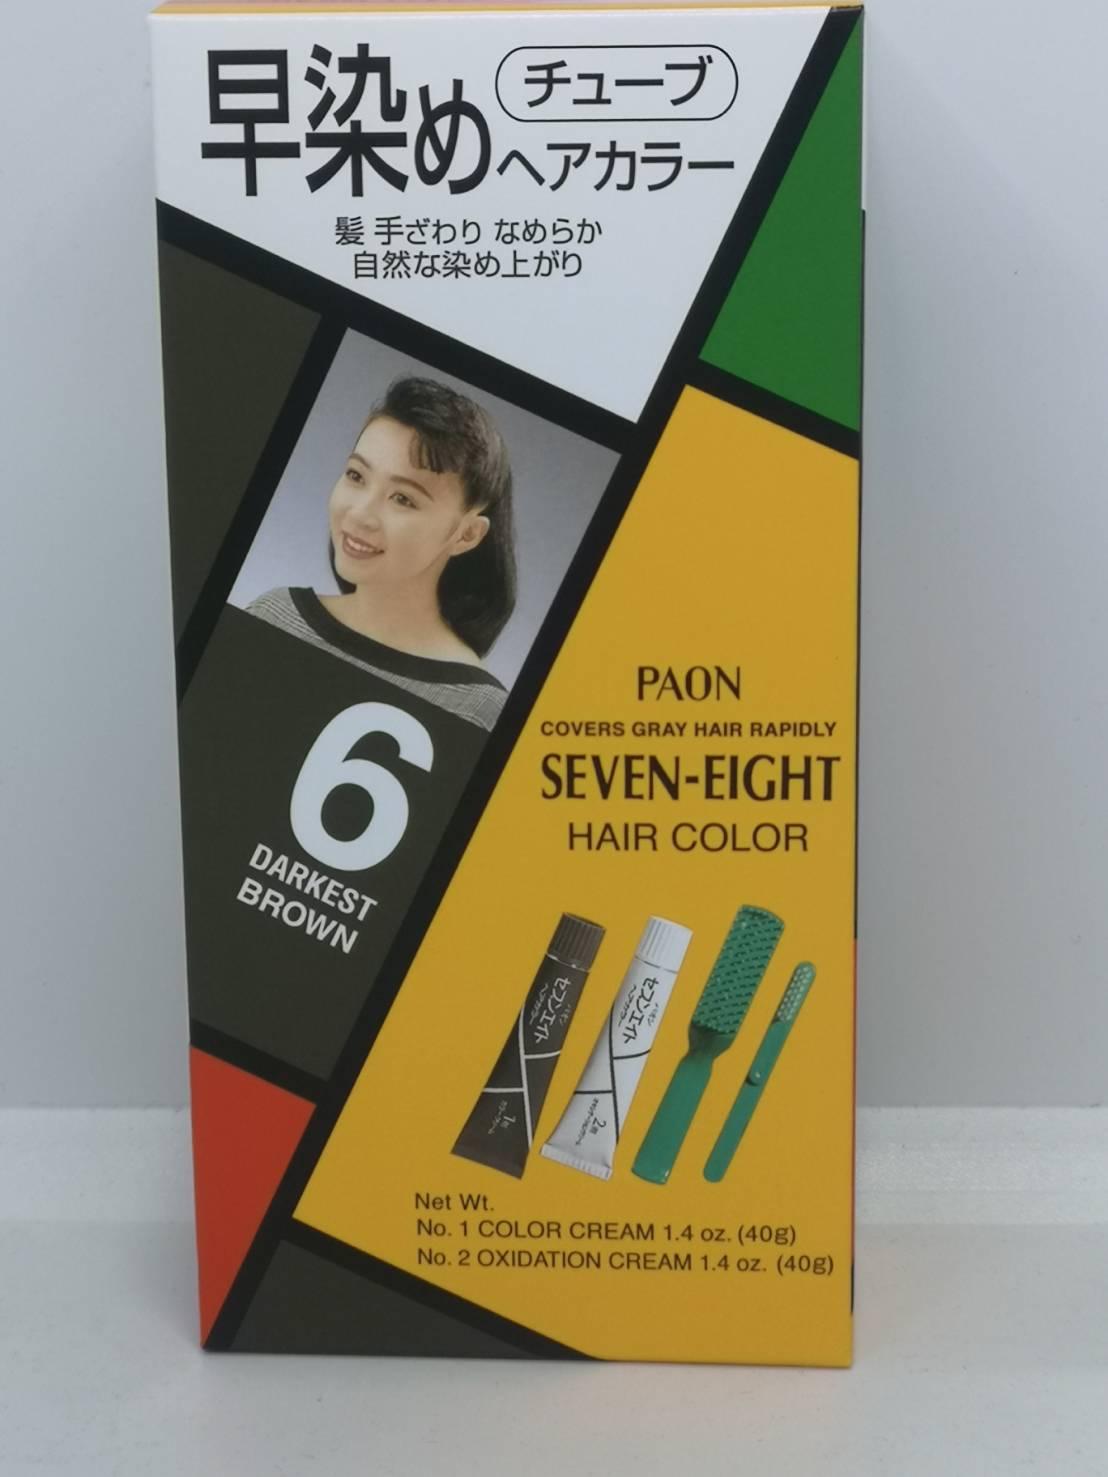 ครีมเปลี่ยนสีผม พาออน เซเว่นเอท Paon seven-eight hair color พาอ่อน จากประเทศญี่ปุ่น แท้ 100 %